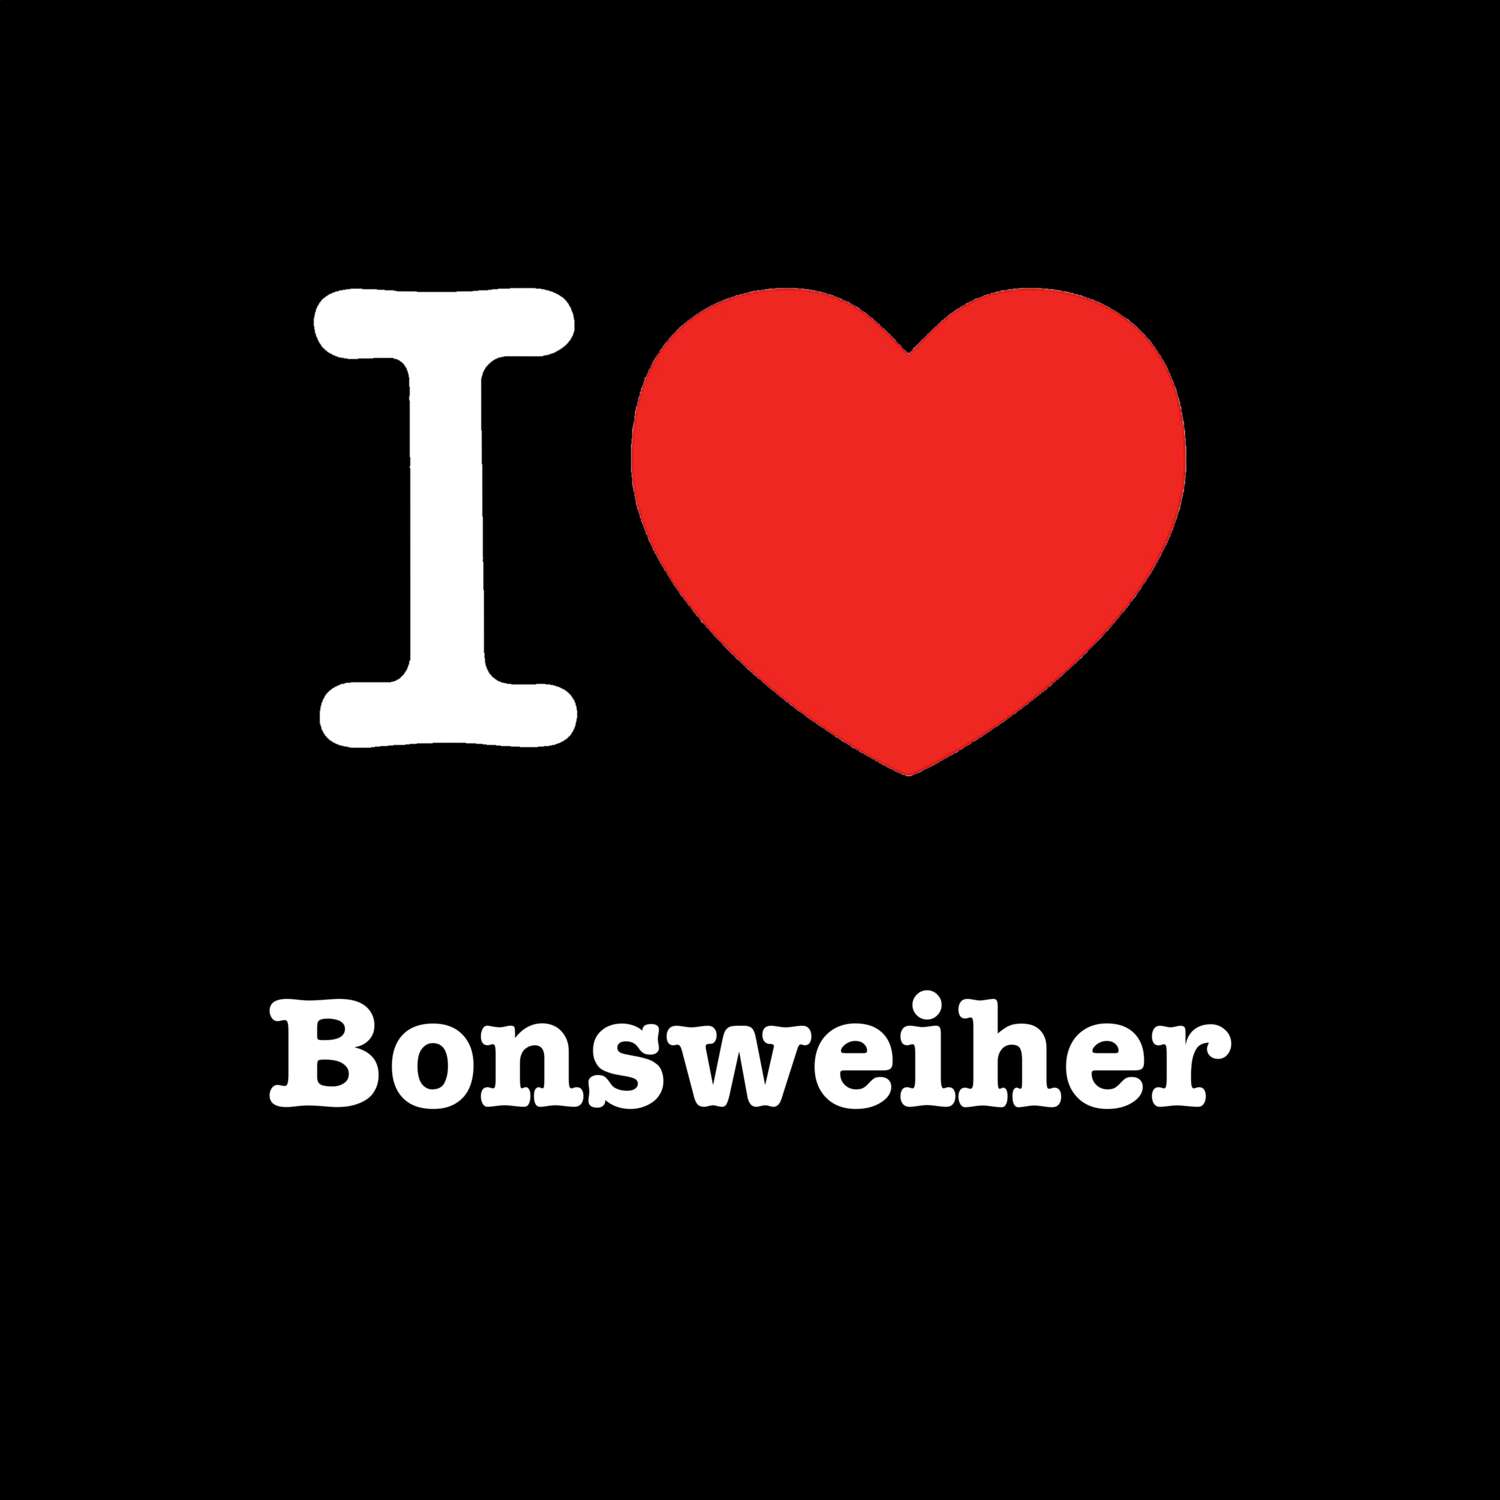 Bonsweiher T-Shirt »I love«